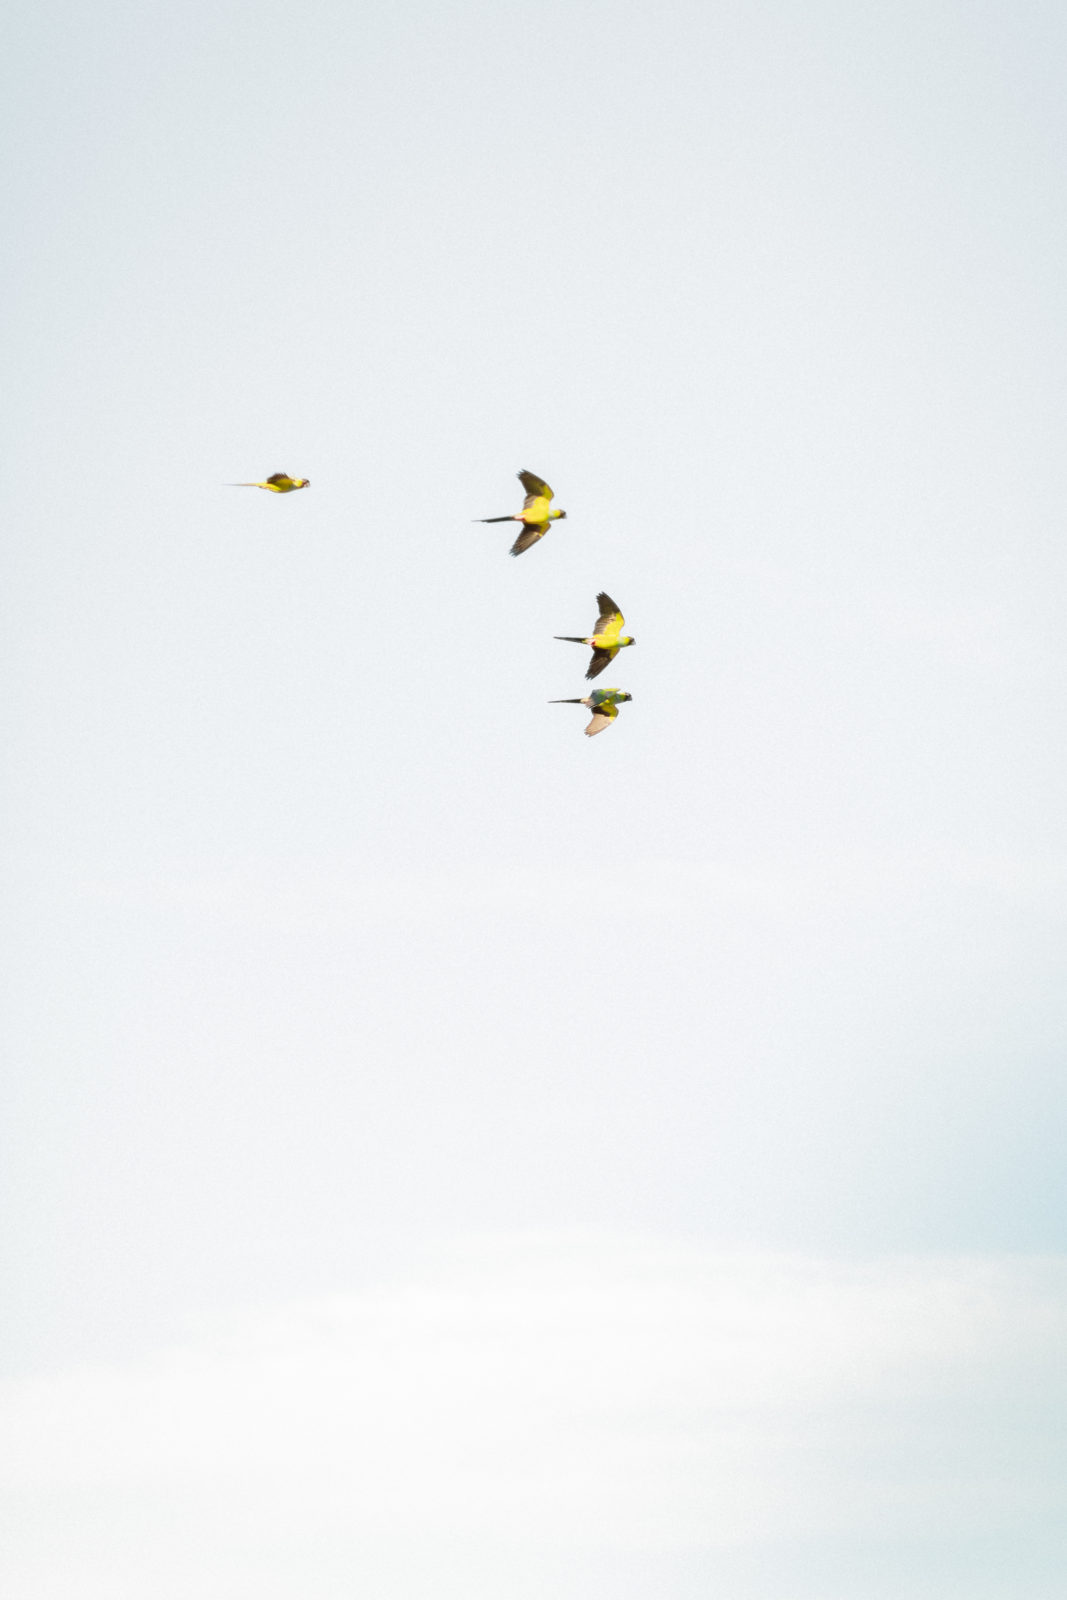 parrots flying in Malibu